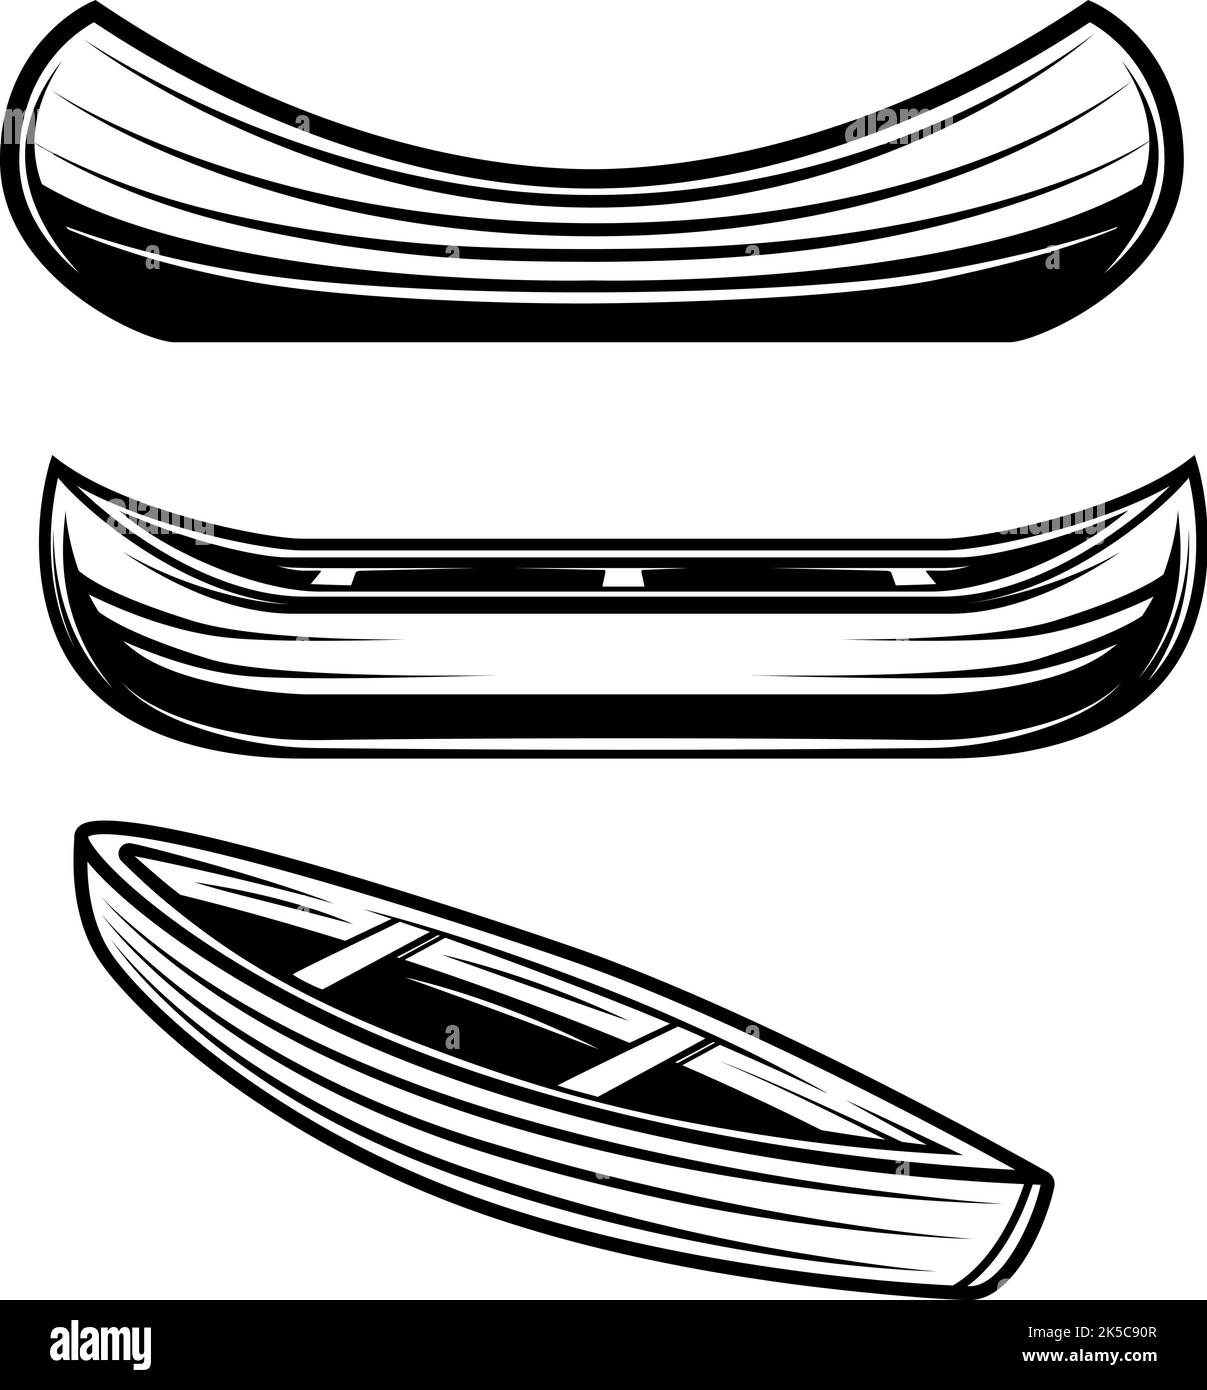 Ensemble d'illustrations de kayak, canoë, bateaux. Élément de conception pour affiche, carte, bannière, panneau, logo. Illustration vectorielle Illustration de Vecteur